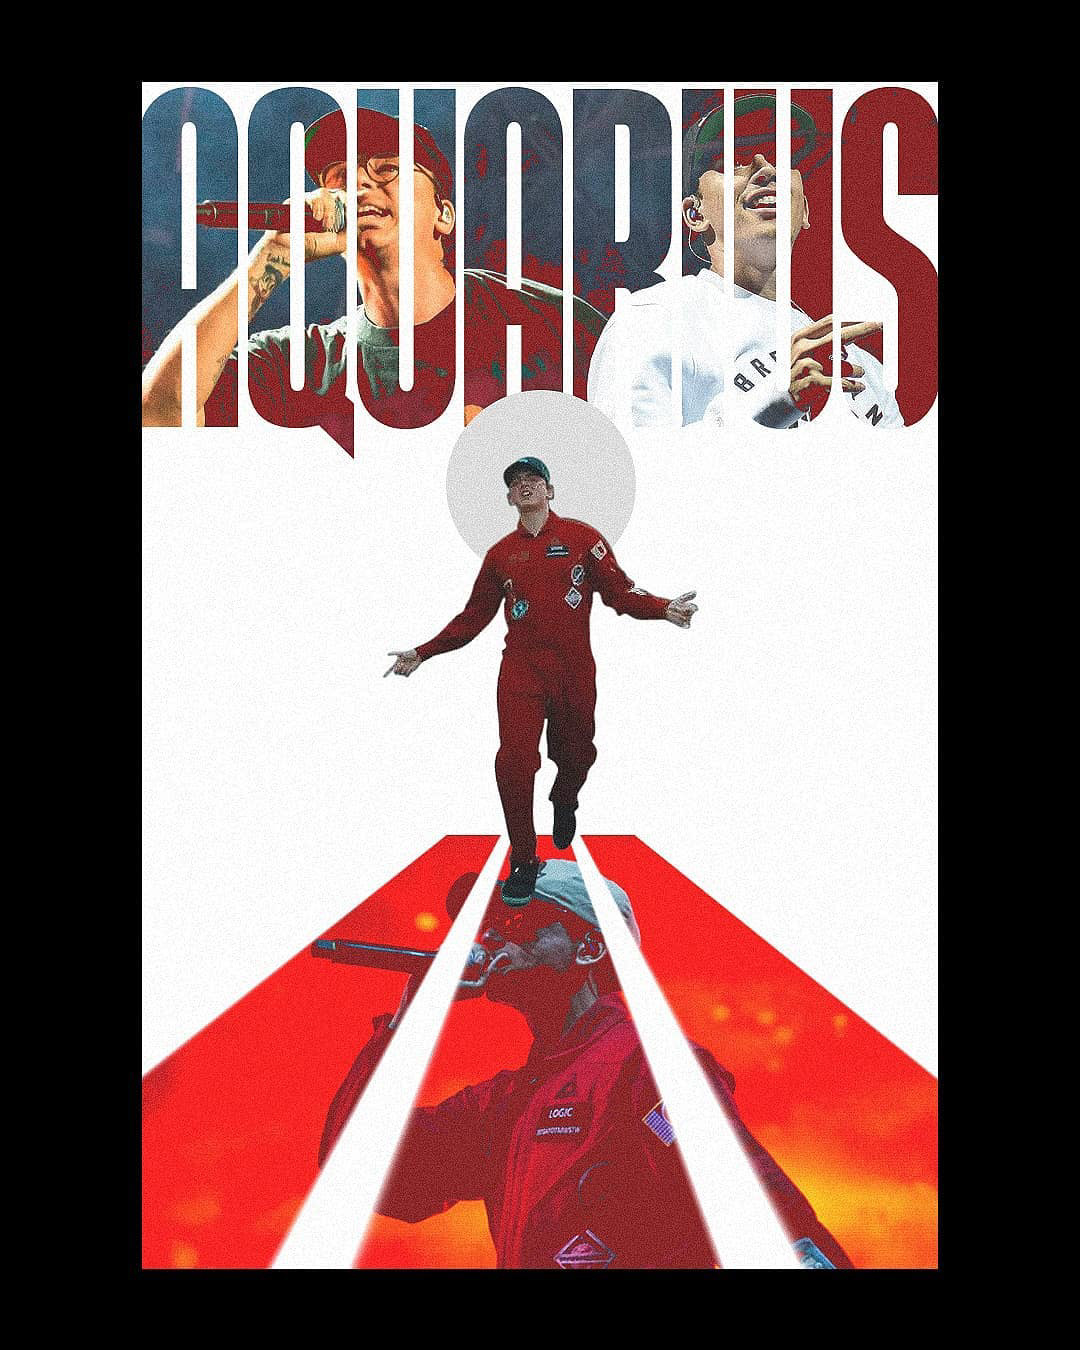 Aquarius III
Logic Poster Design Artwork